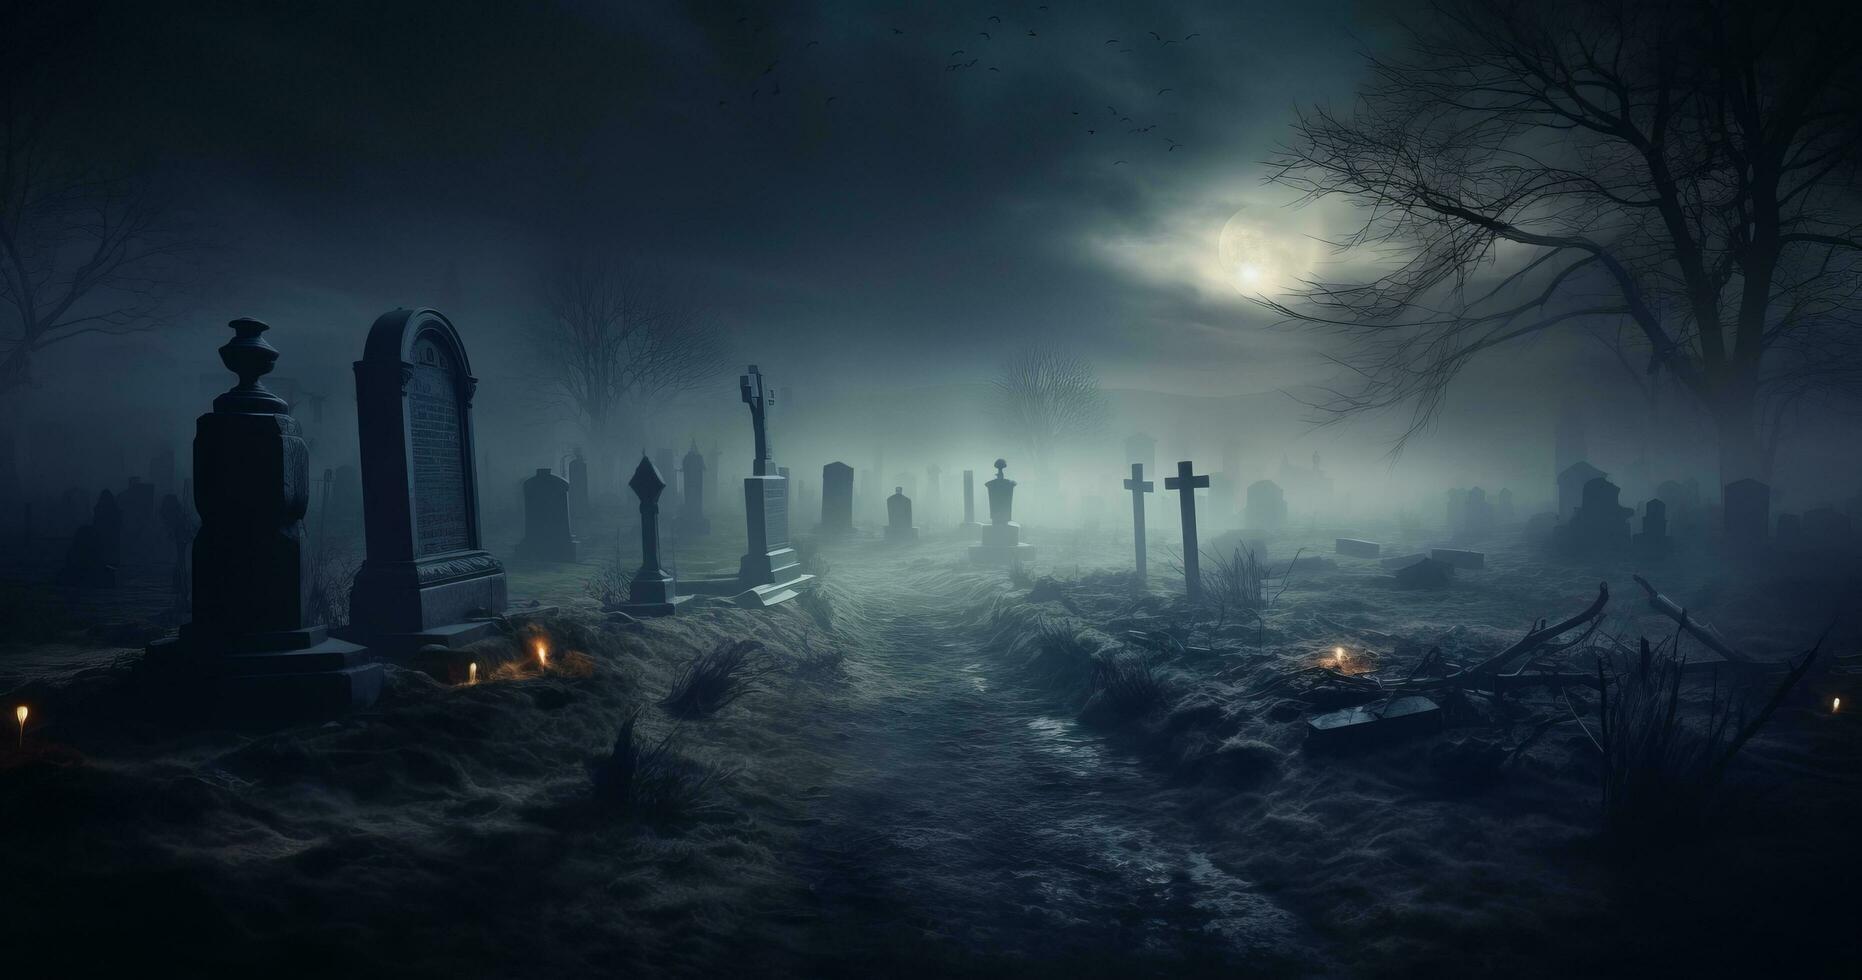 natt scen i en kyrkogård med gravstenar foto